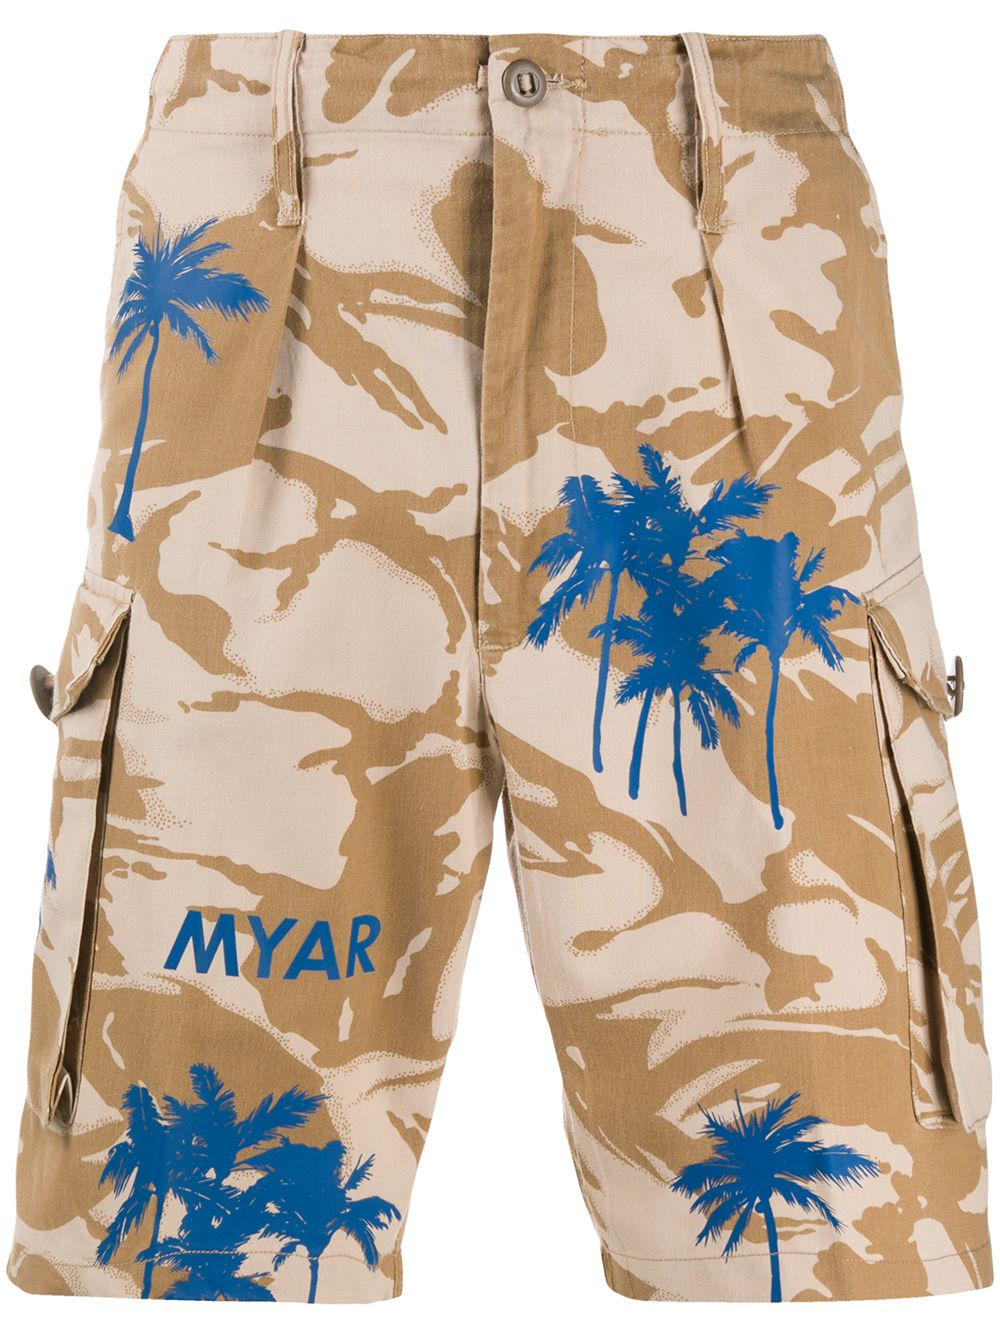 фото Myar шорты карго с камуфляжным принтом и логотипом